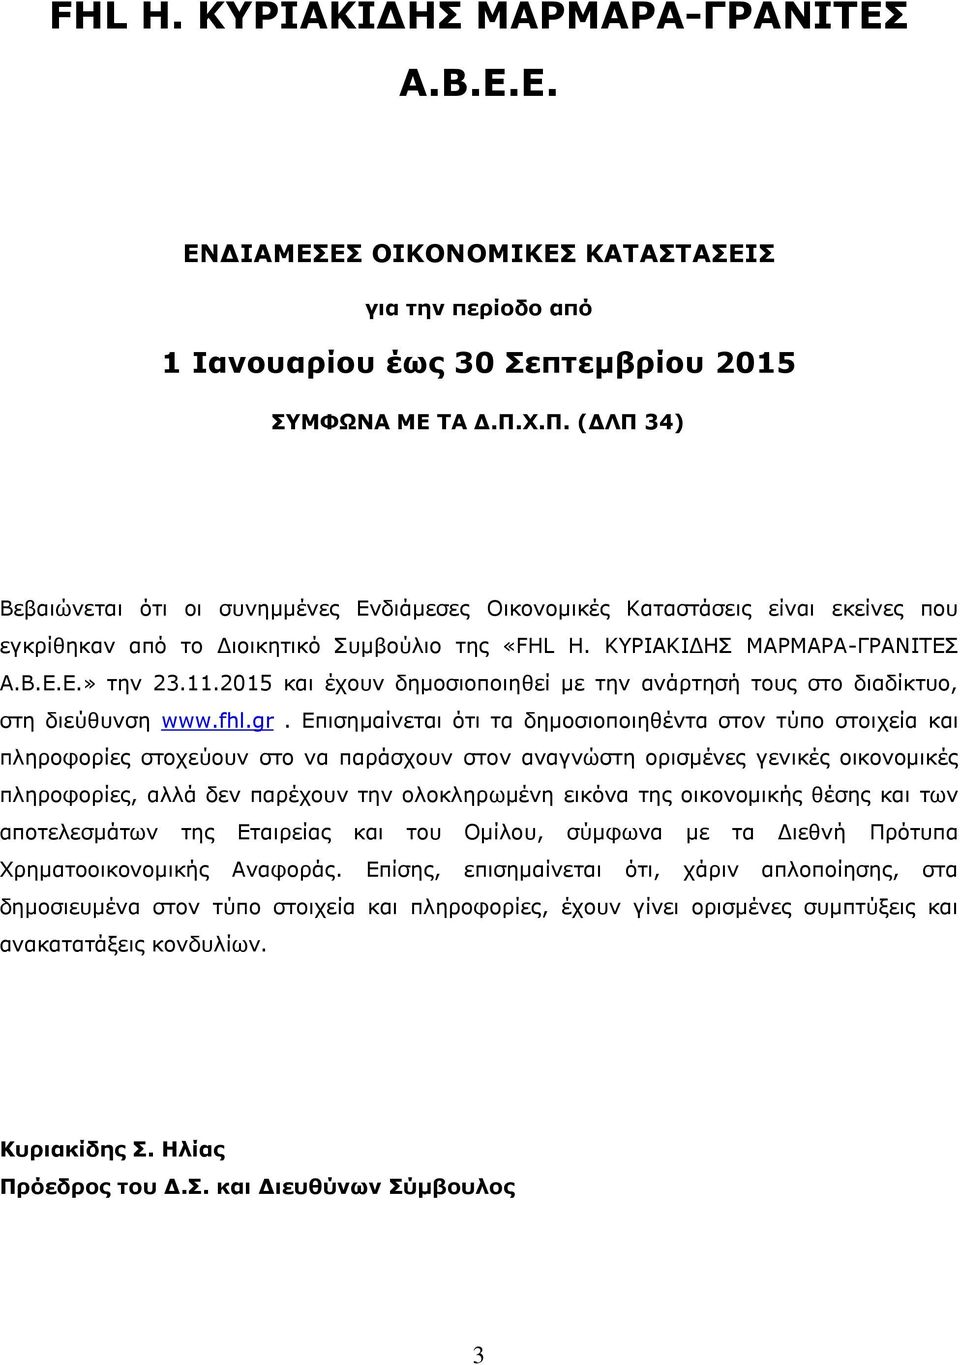 2015 και έχουν δημοσιοποιηθεί με την ανάρτησή τους στο διαδίκτυο, στη διεύθυνση www.fhl.gr.